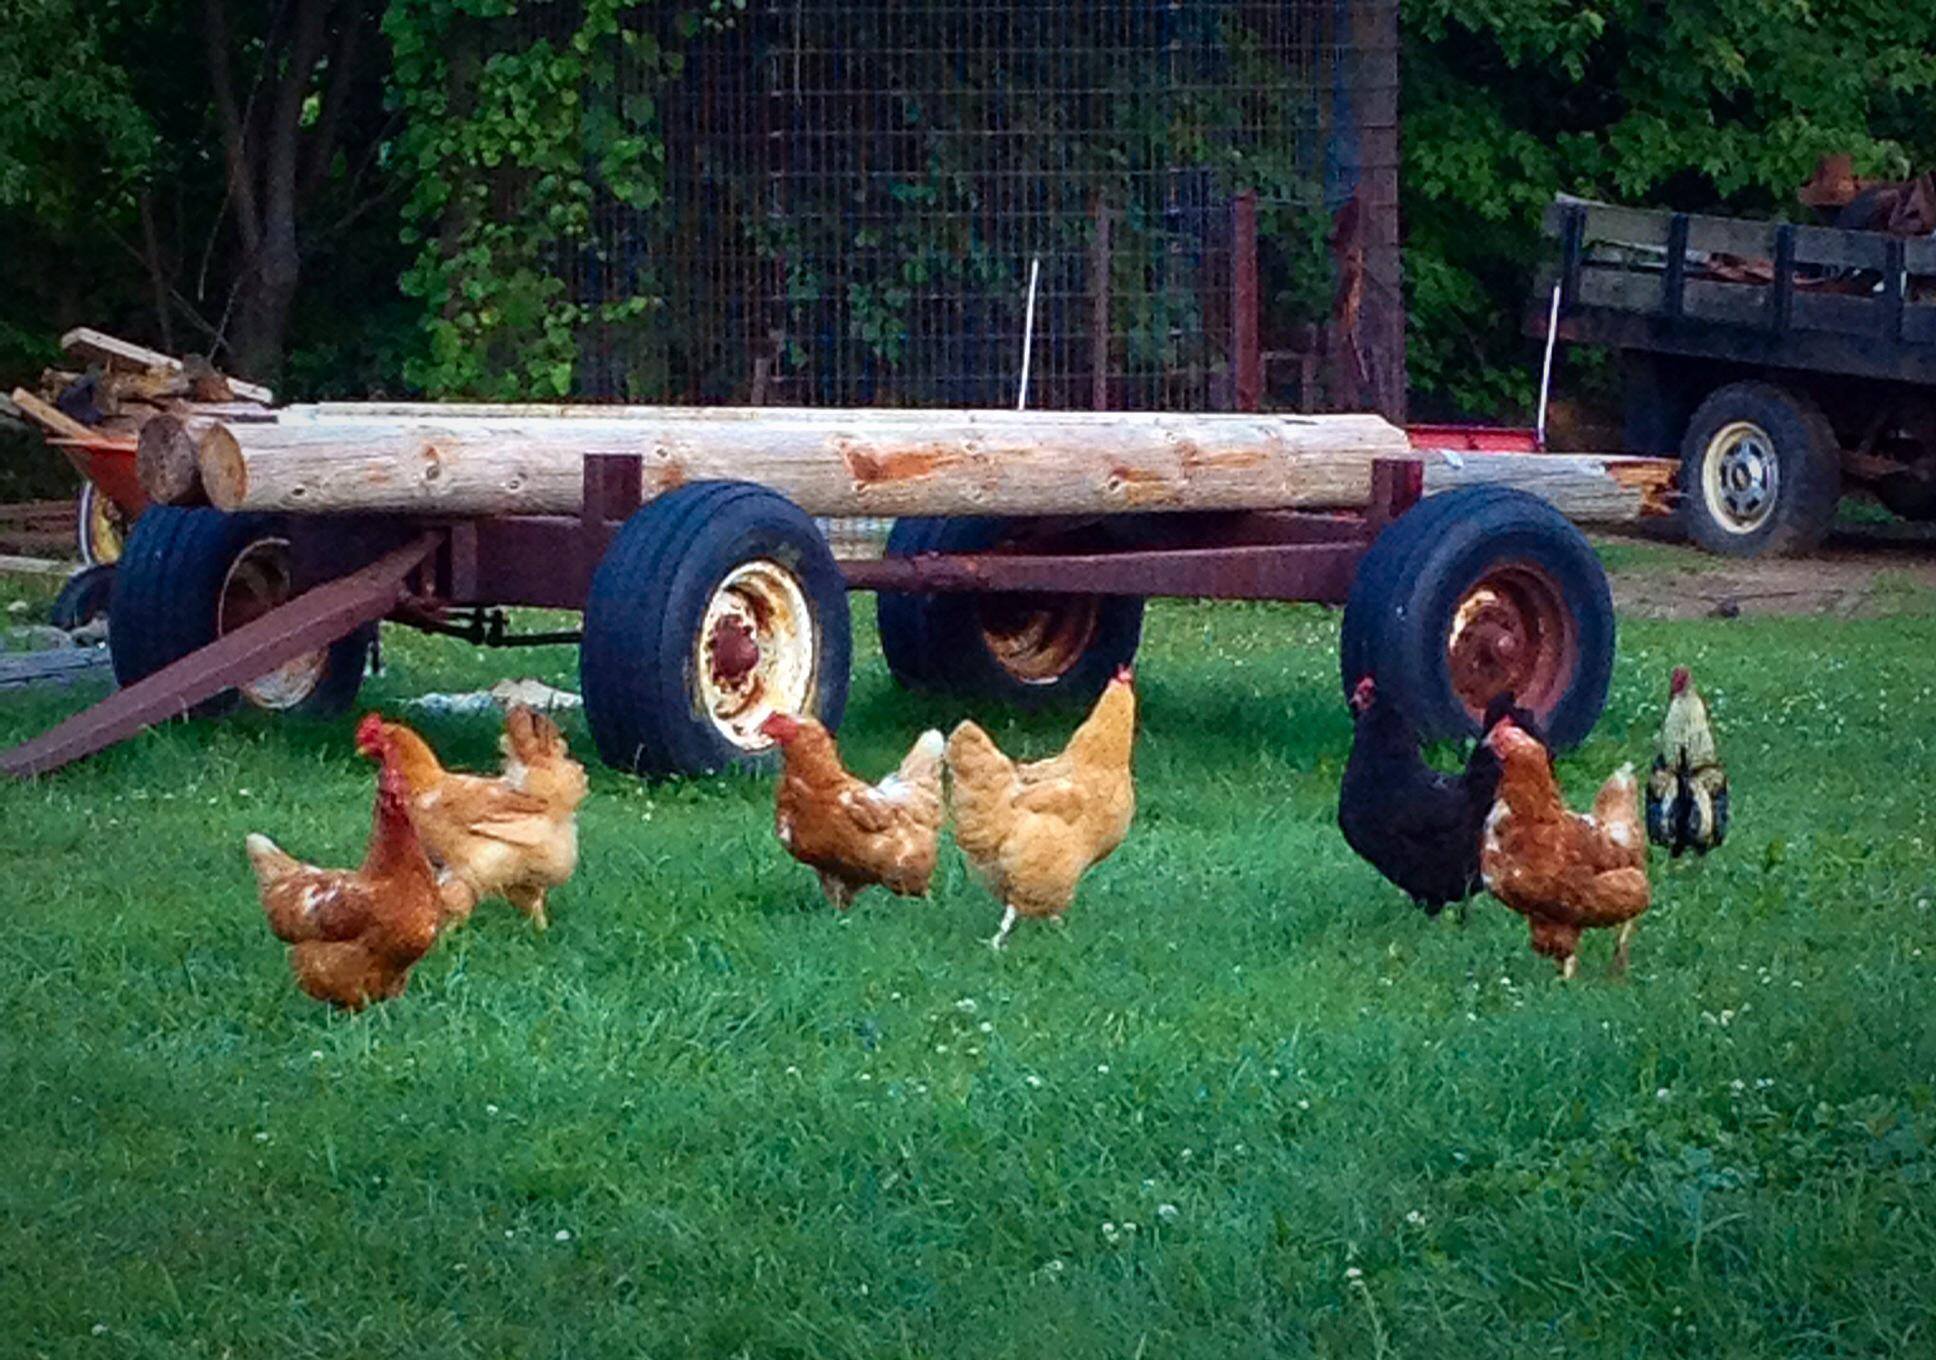 chickens running around in a yard